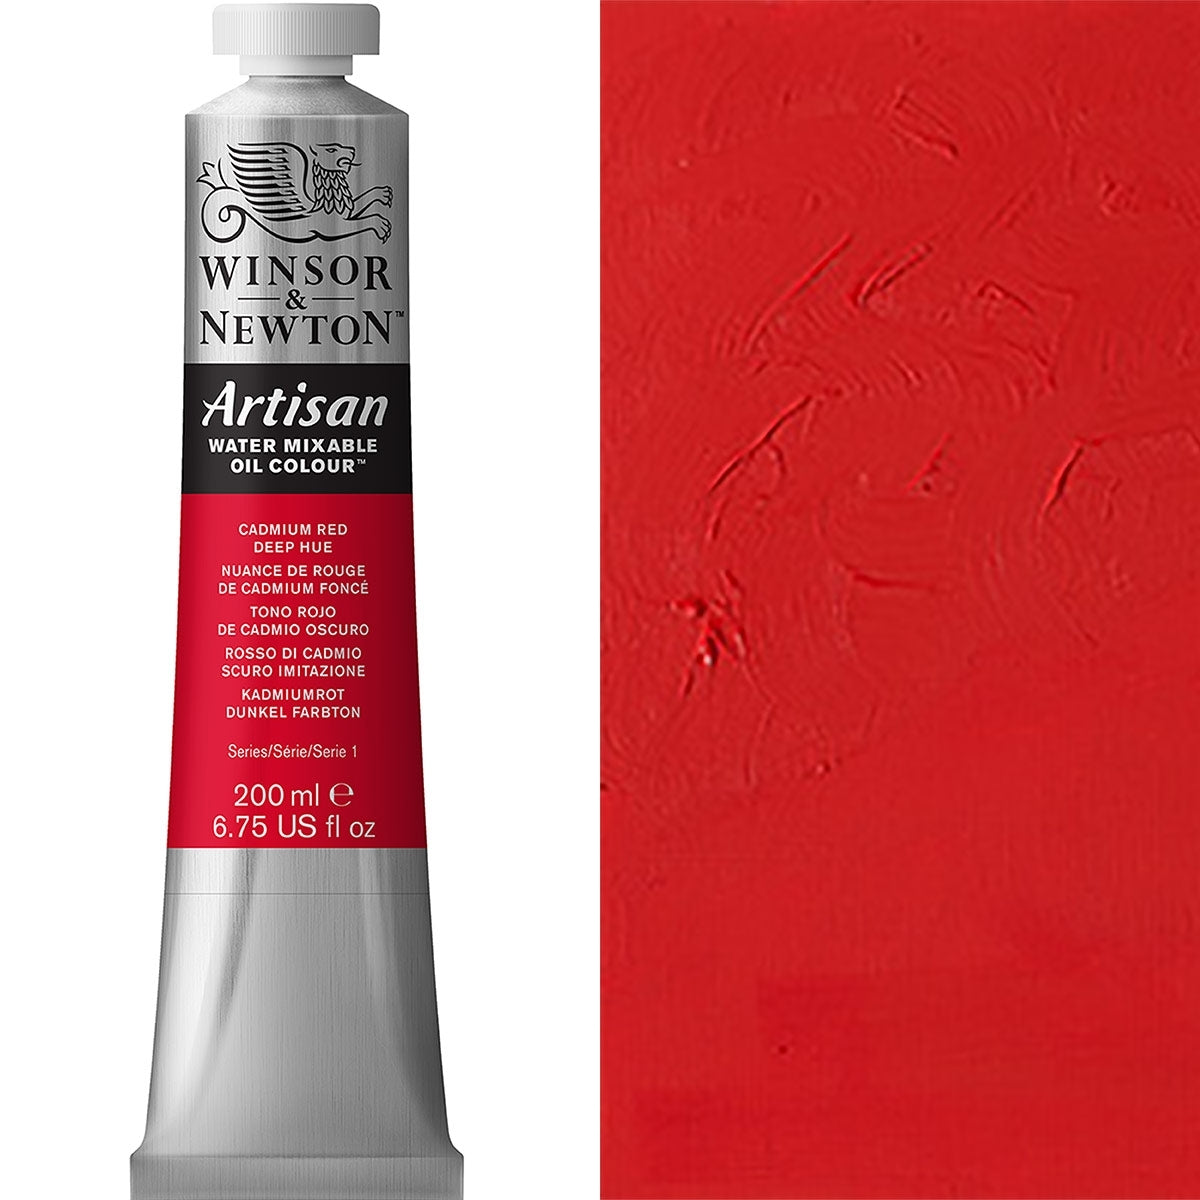 Winsor et Newton - Couleur d'huile artisanale Watermixable - 200 ml - Cadmium Red Deep Hue